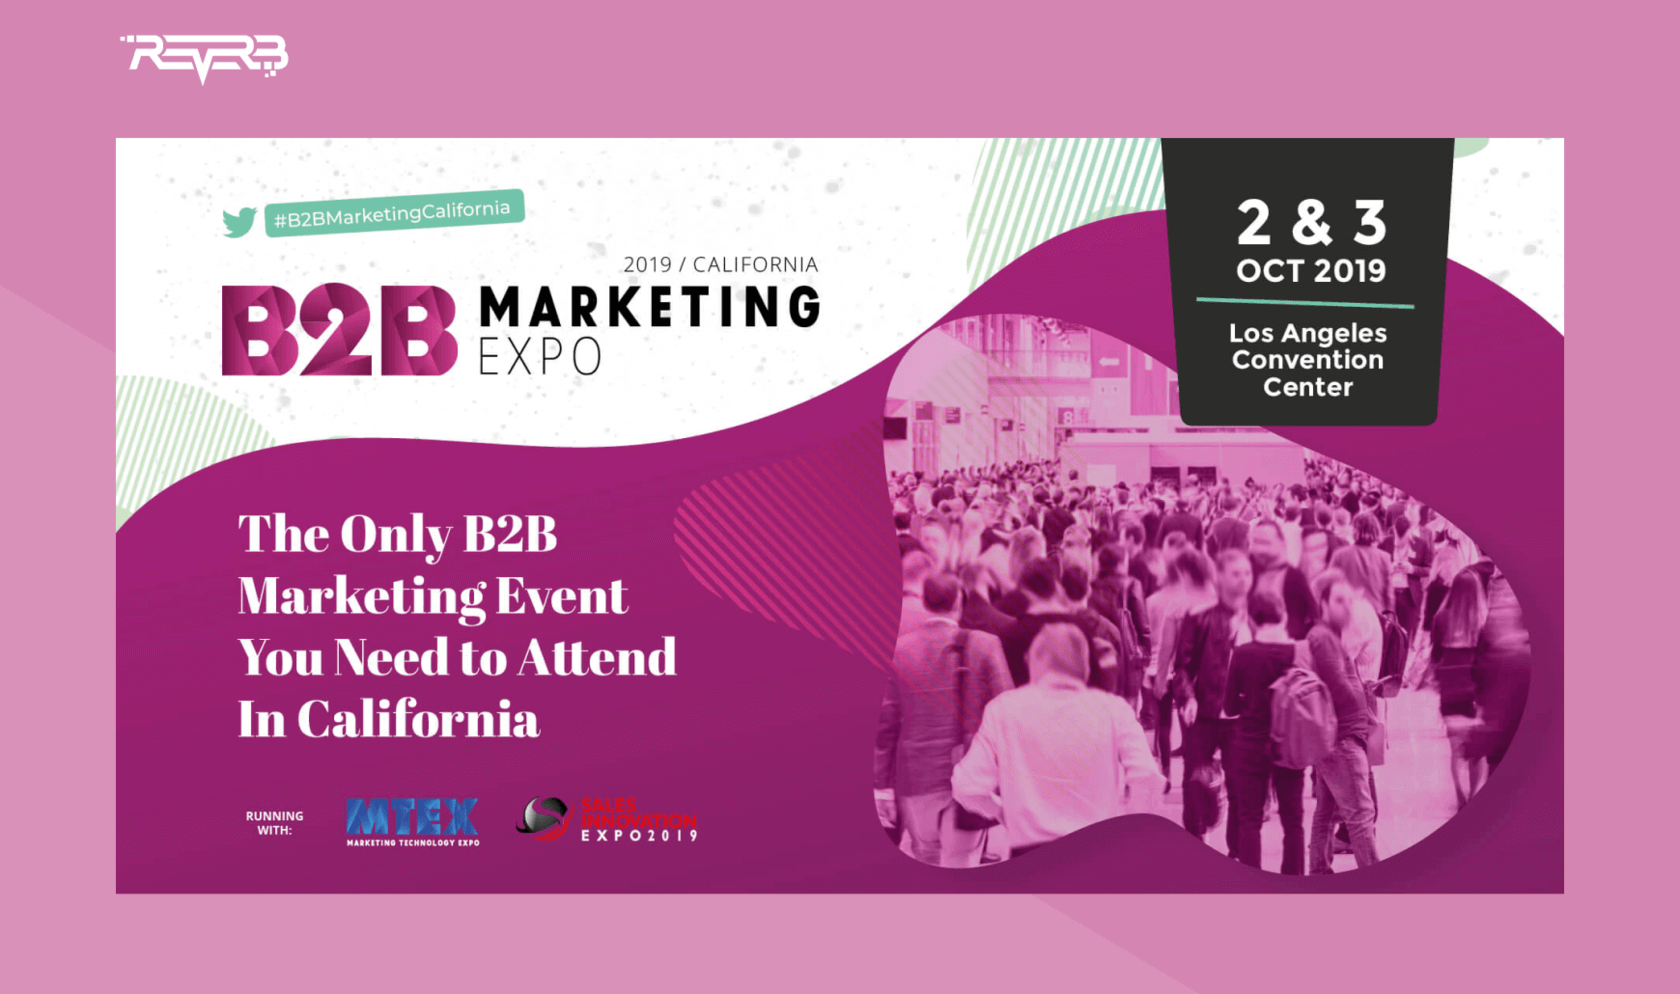 b2b marketing expo 2